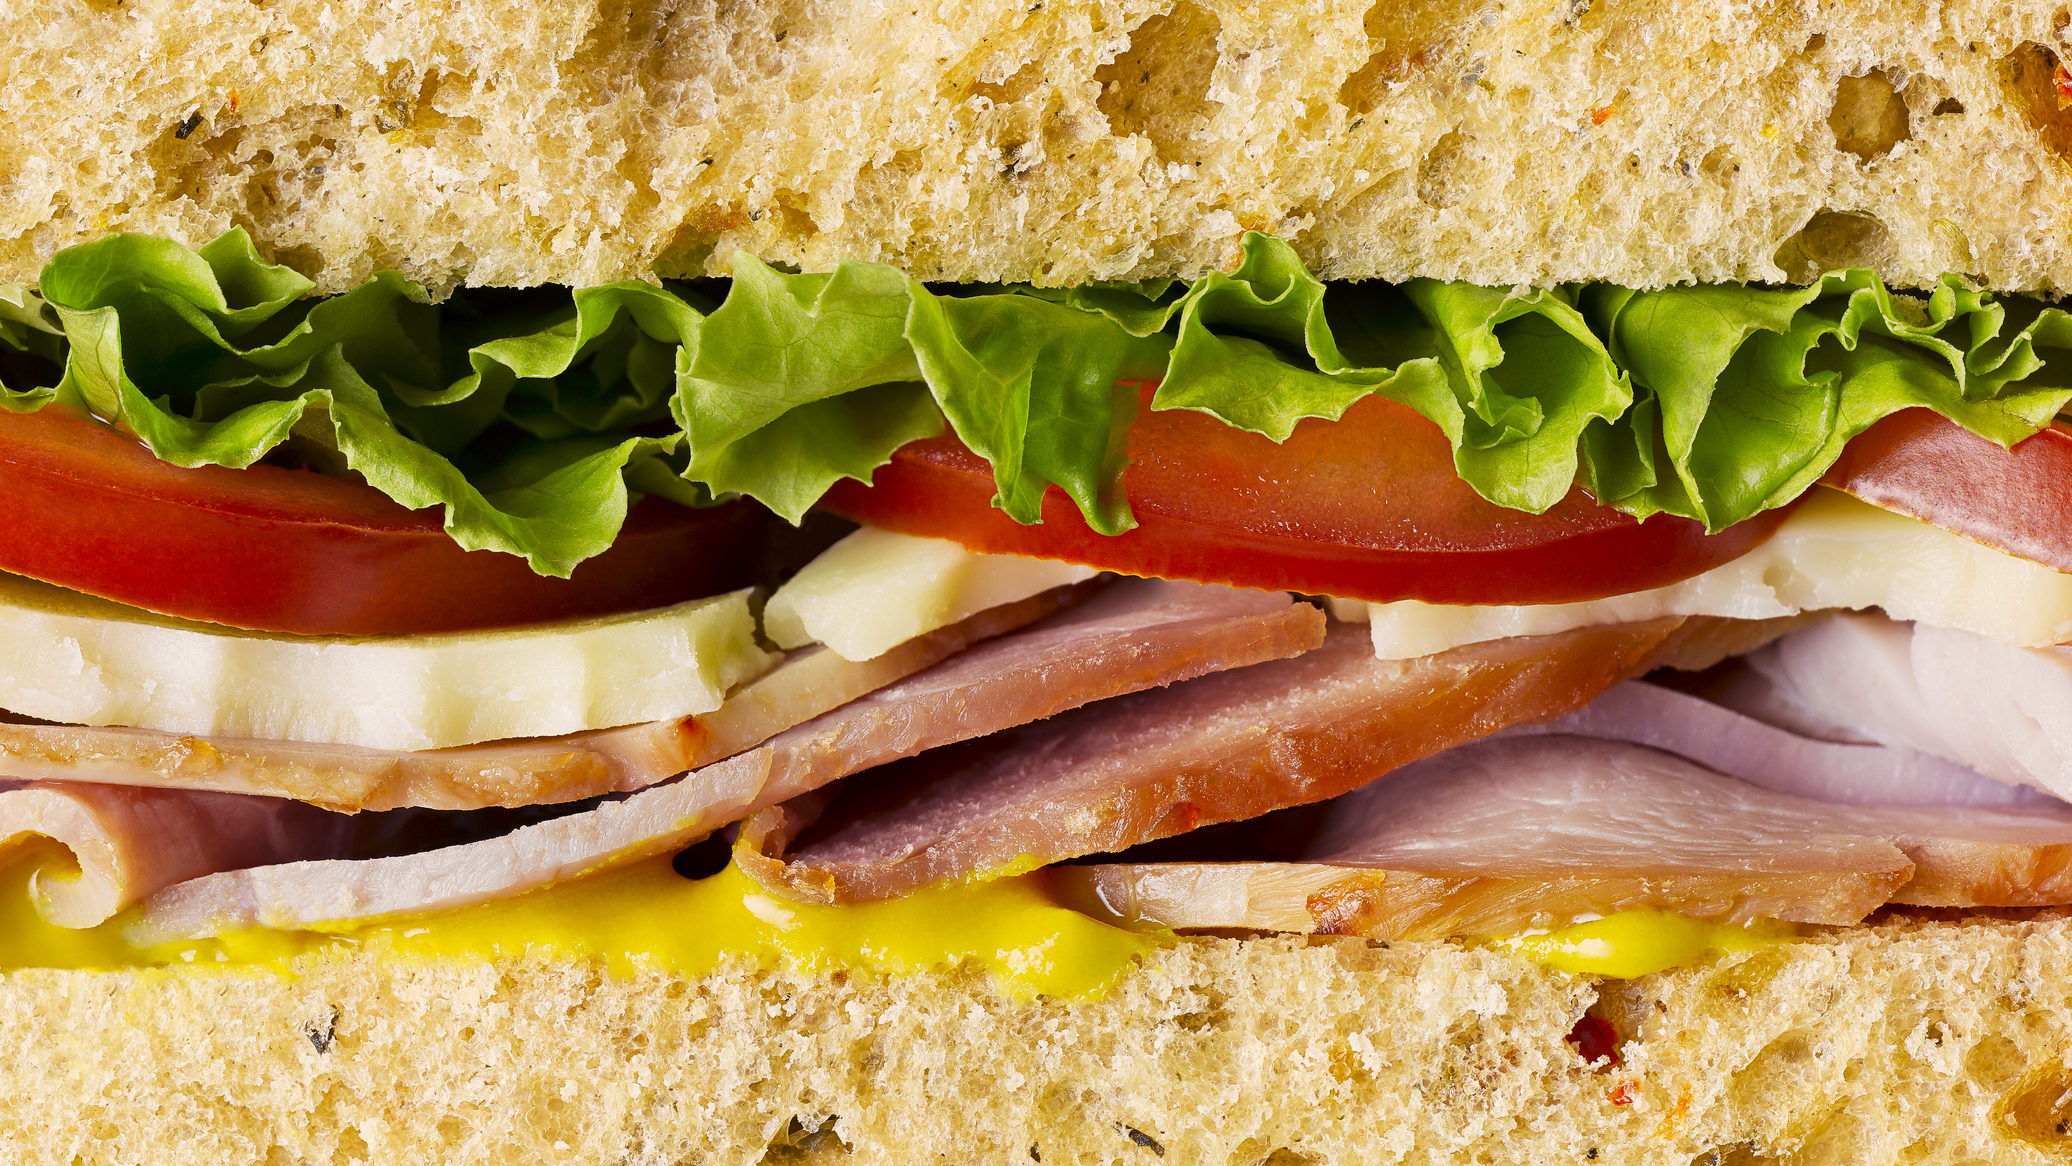 Sonkás szendvicset evett a gyerek a vegán kávézóban, egymásnak feszült az alkalmazott és a család